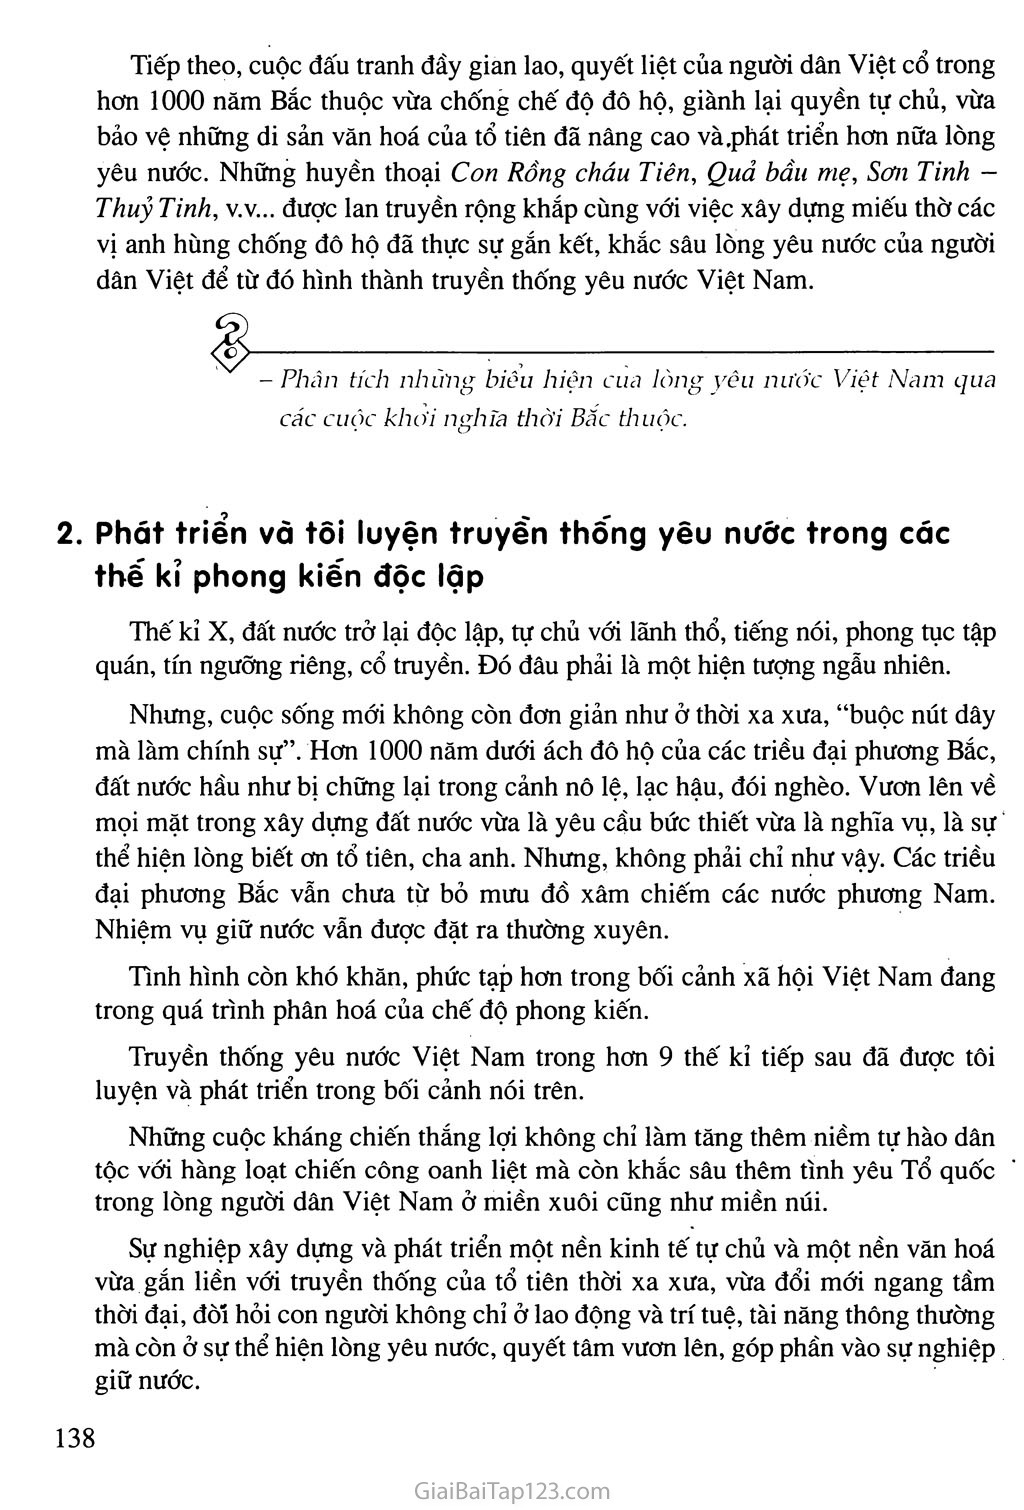 Bài 28: Truyền thống yêu nước của dân tộc Việt Nam thời phong kiến trang 2